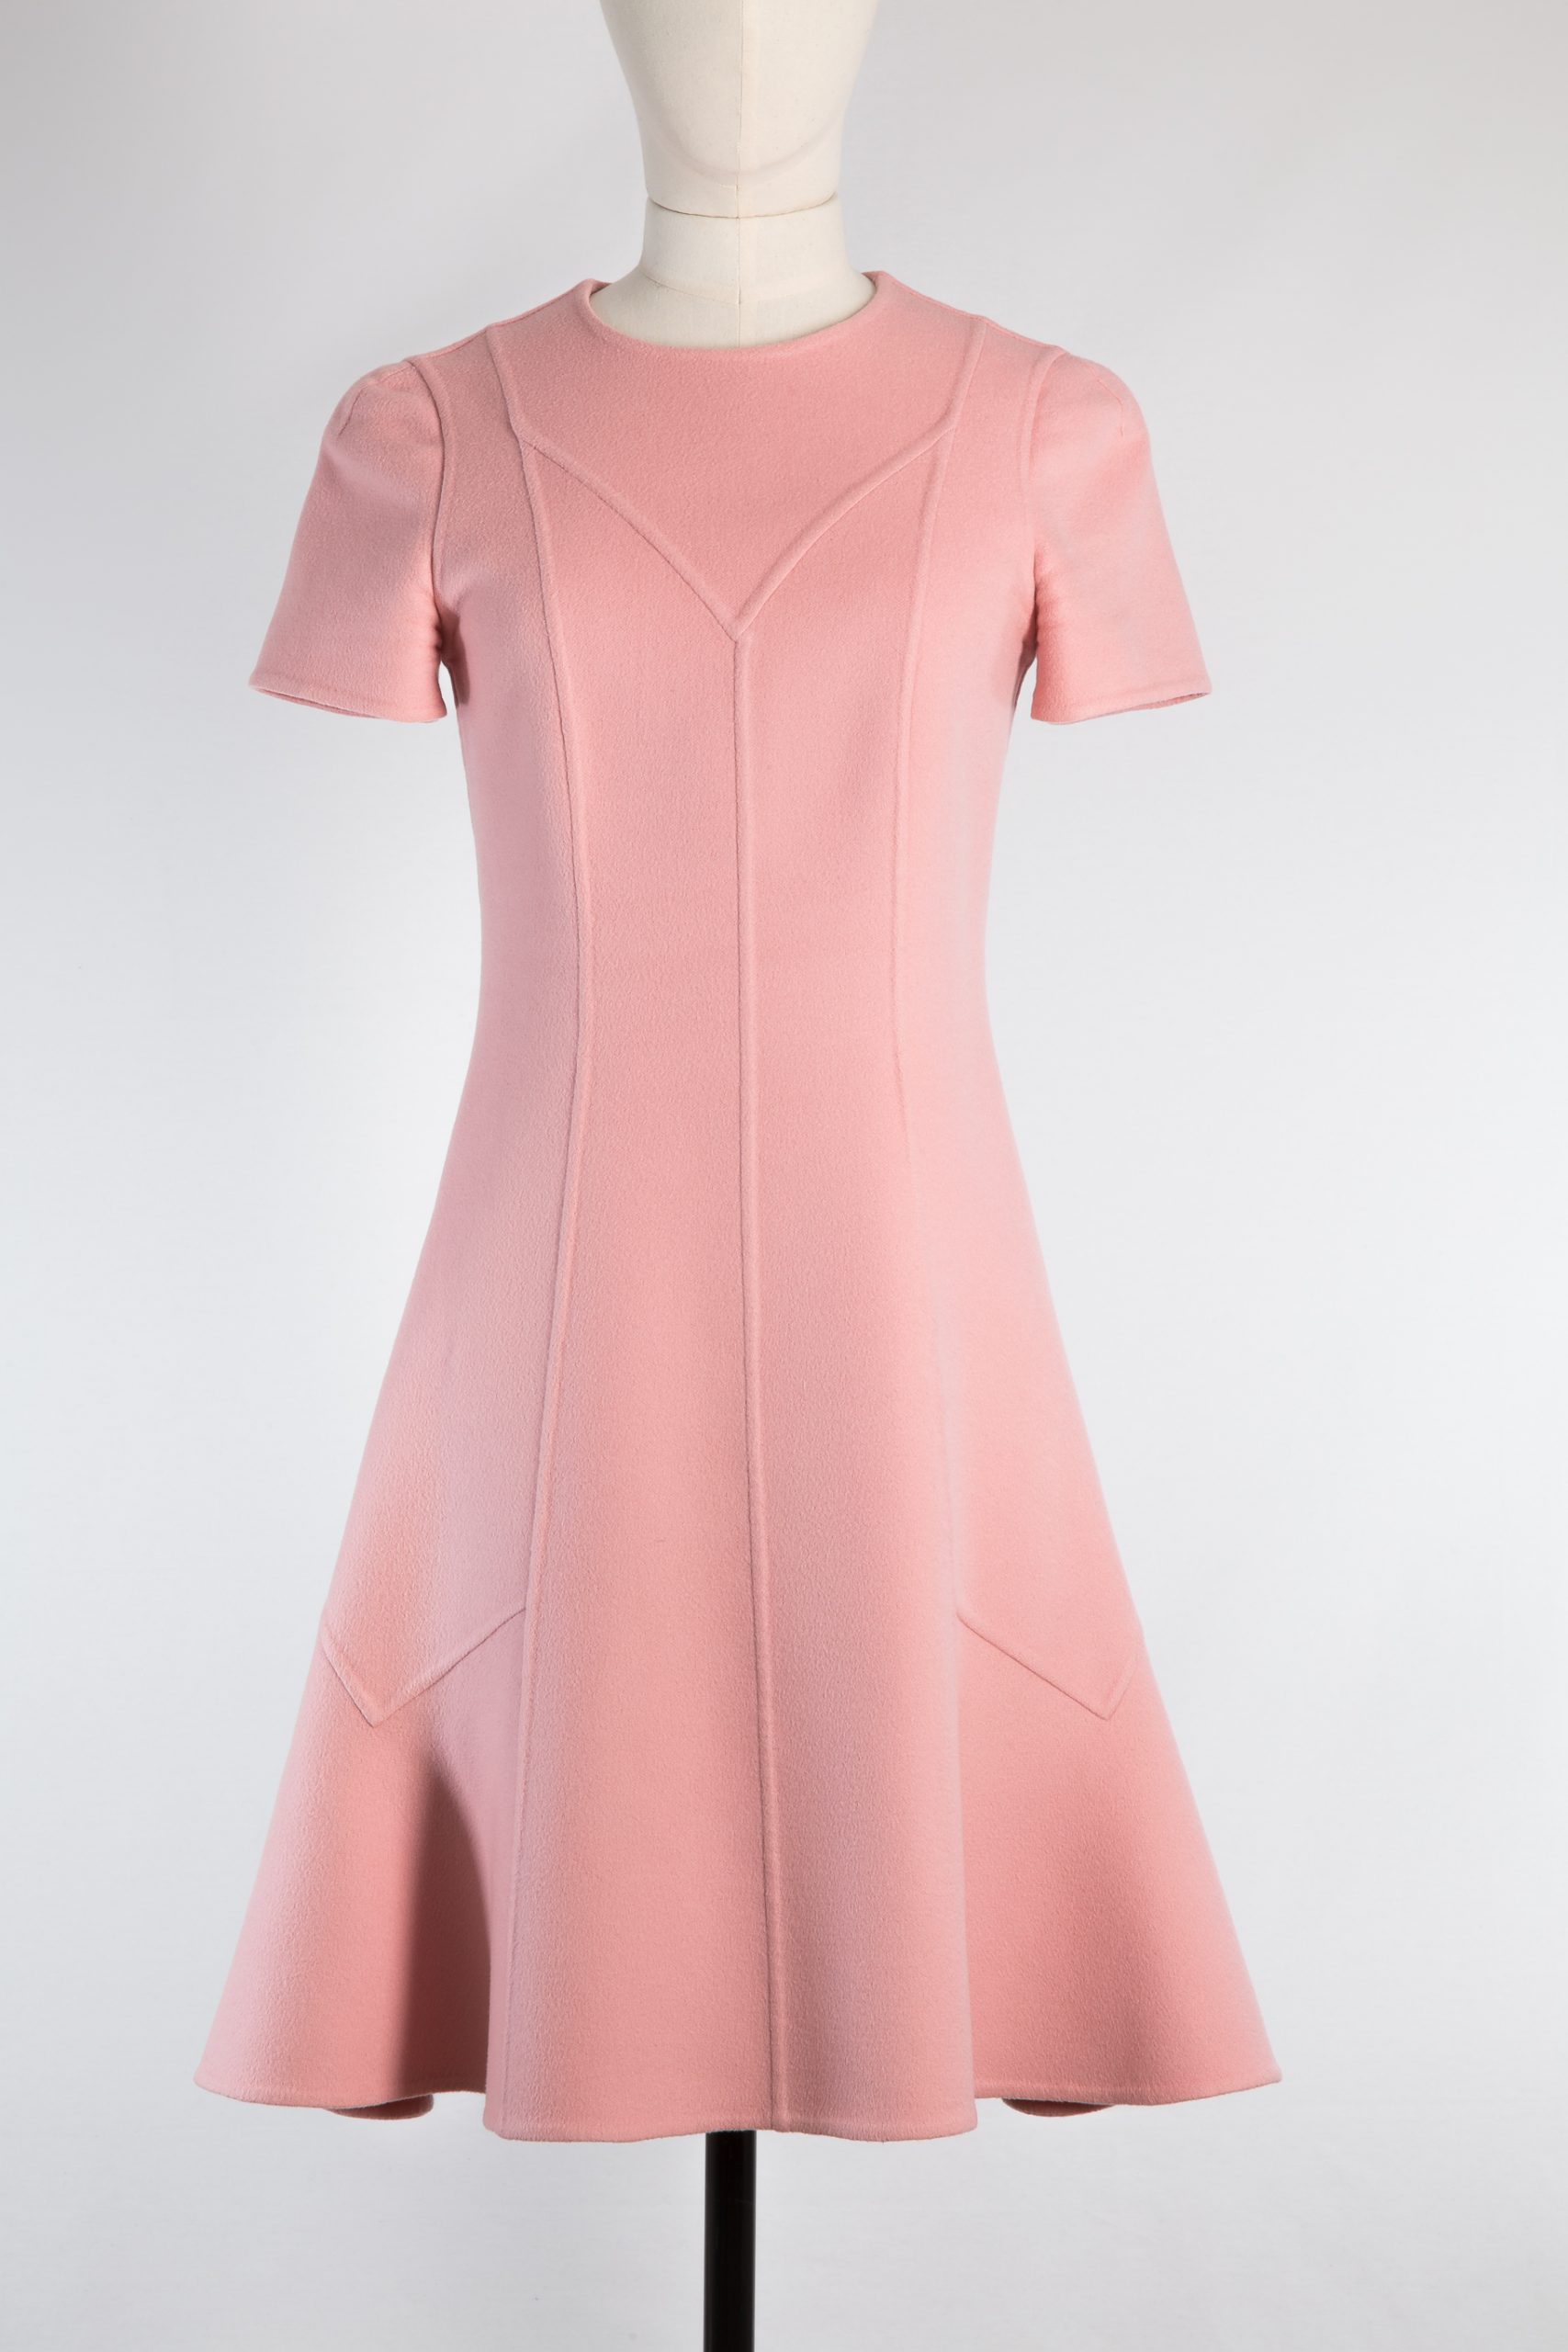 Ora's closet - Louis Vuitton dresses for babies R2000